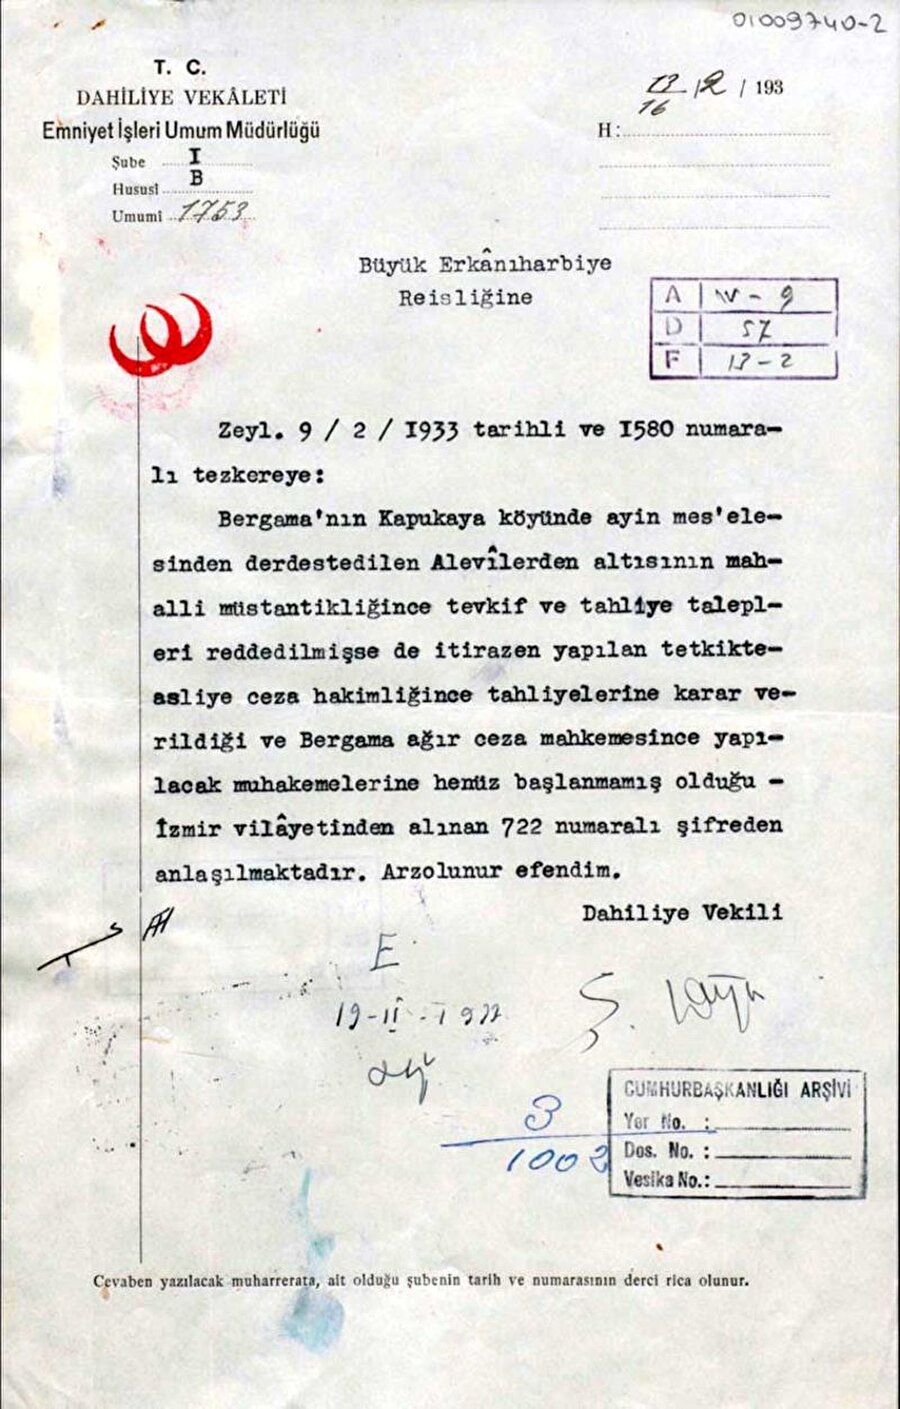  İçişleri Bakanlığı’ndan Cumhurbaşkanlığı’na 13 Şubat 1933’te gönderilen yazıda Alevî âyini yaparken yakalanan vatandaşlar hakkında bilgi veriliyor.

                                    
                                